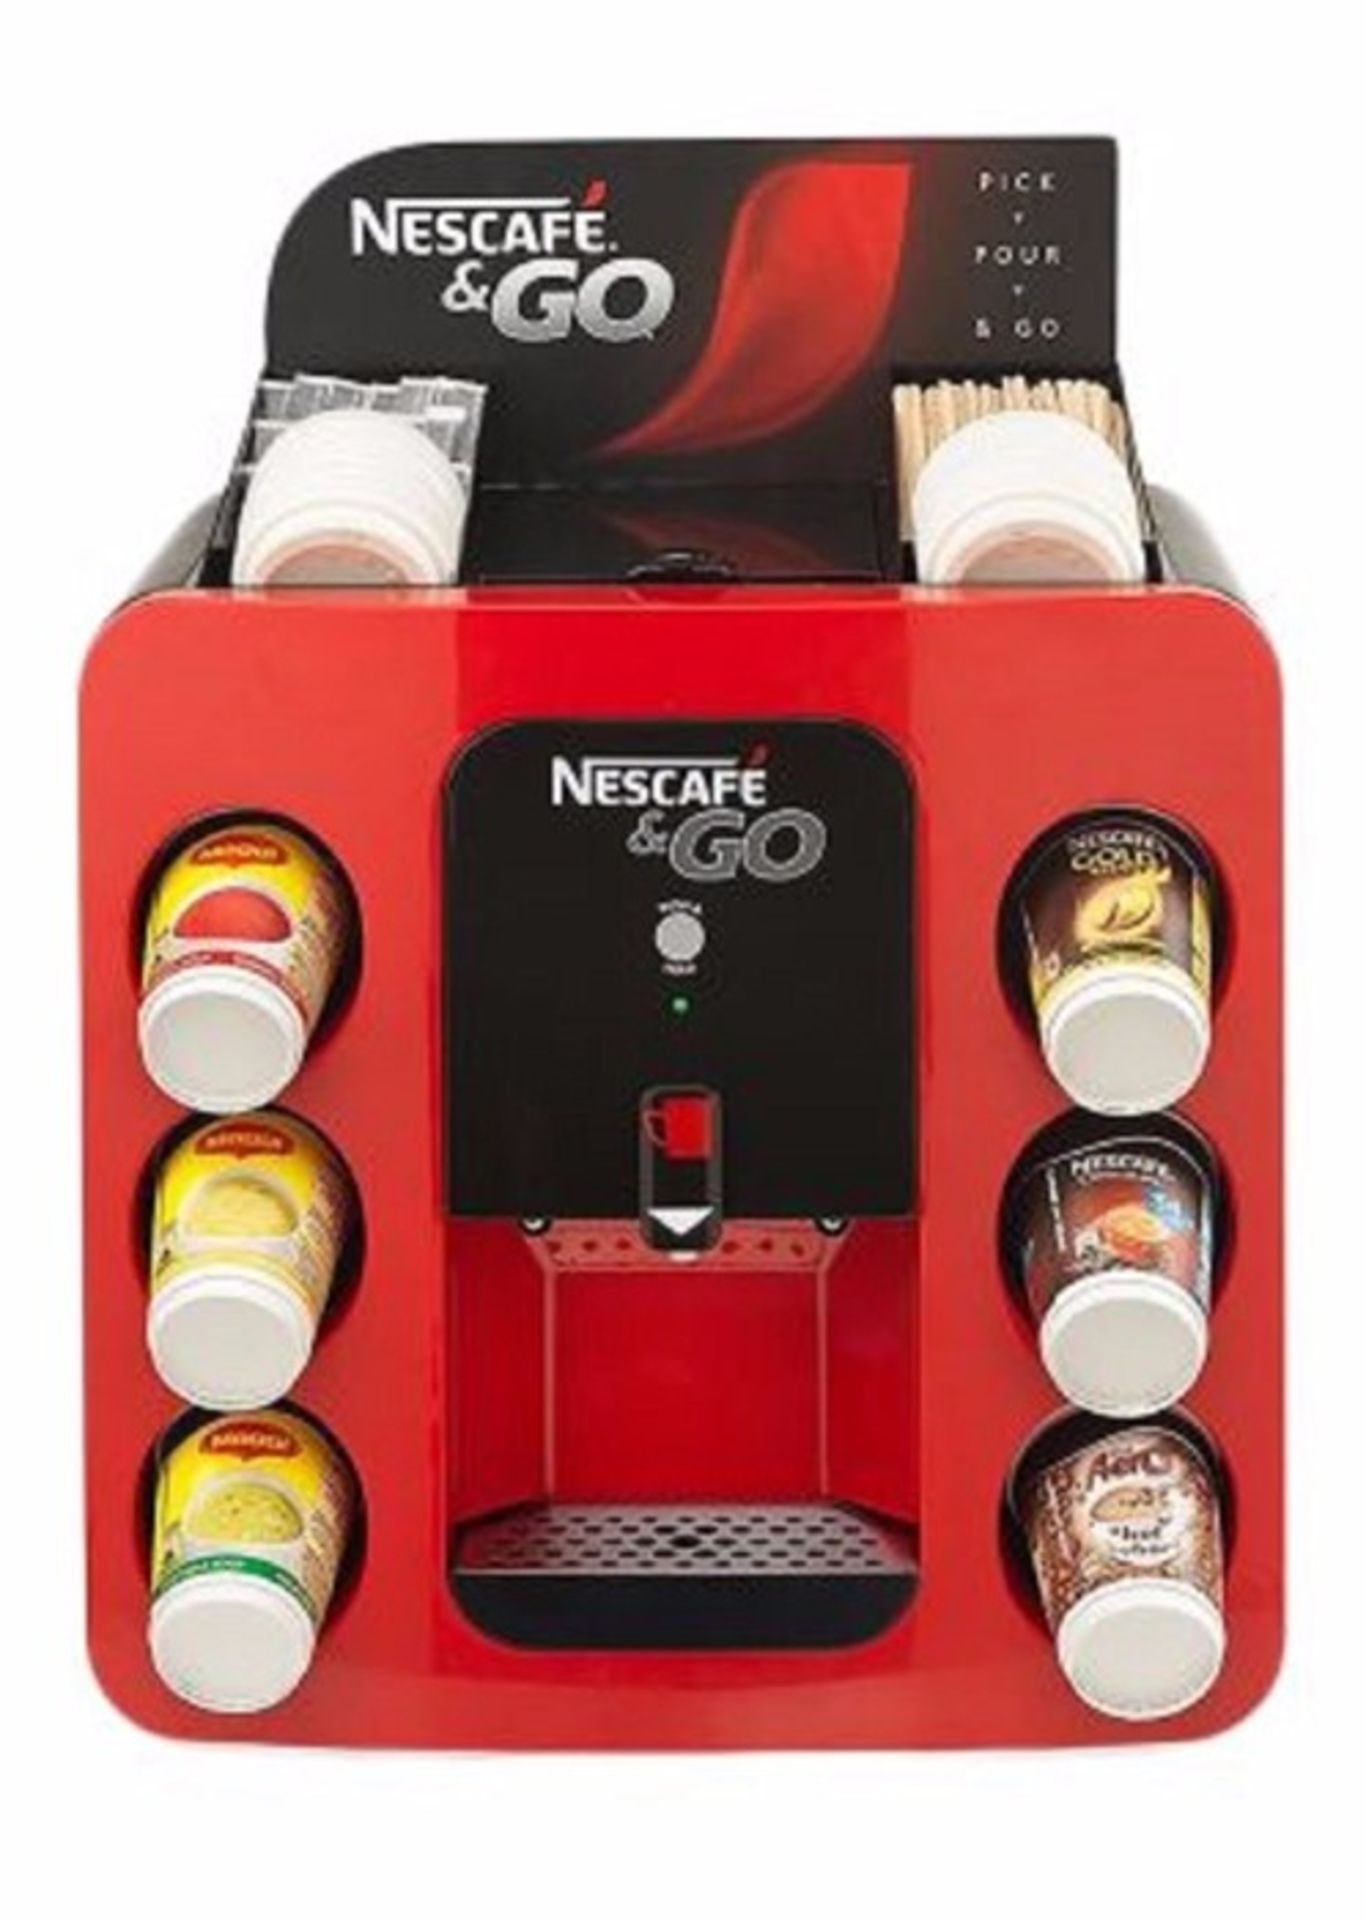 Nescafe & Go Coffee Machine C02405 - New and Boxed - BigP - 1219795